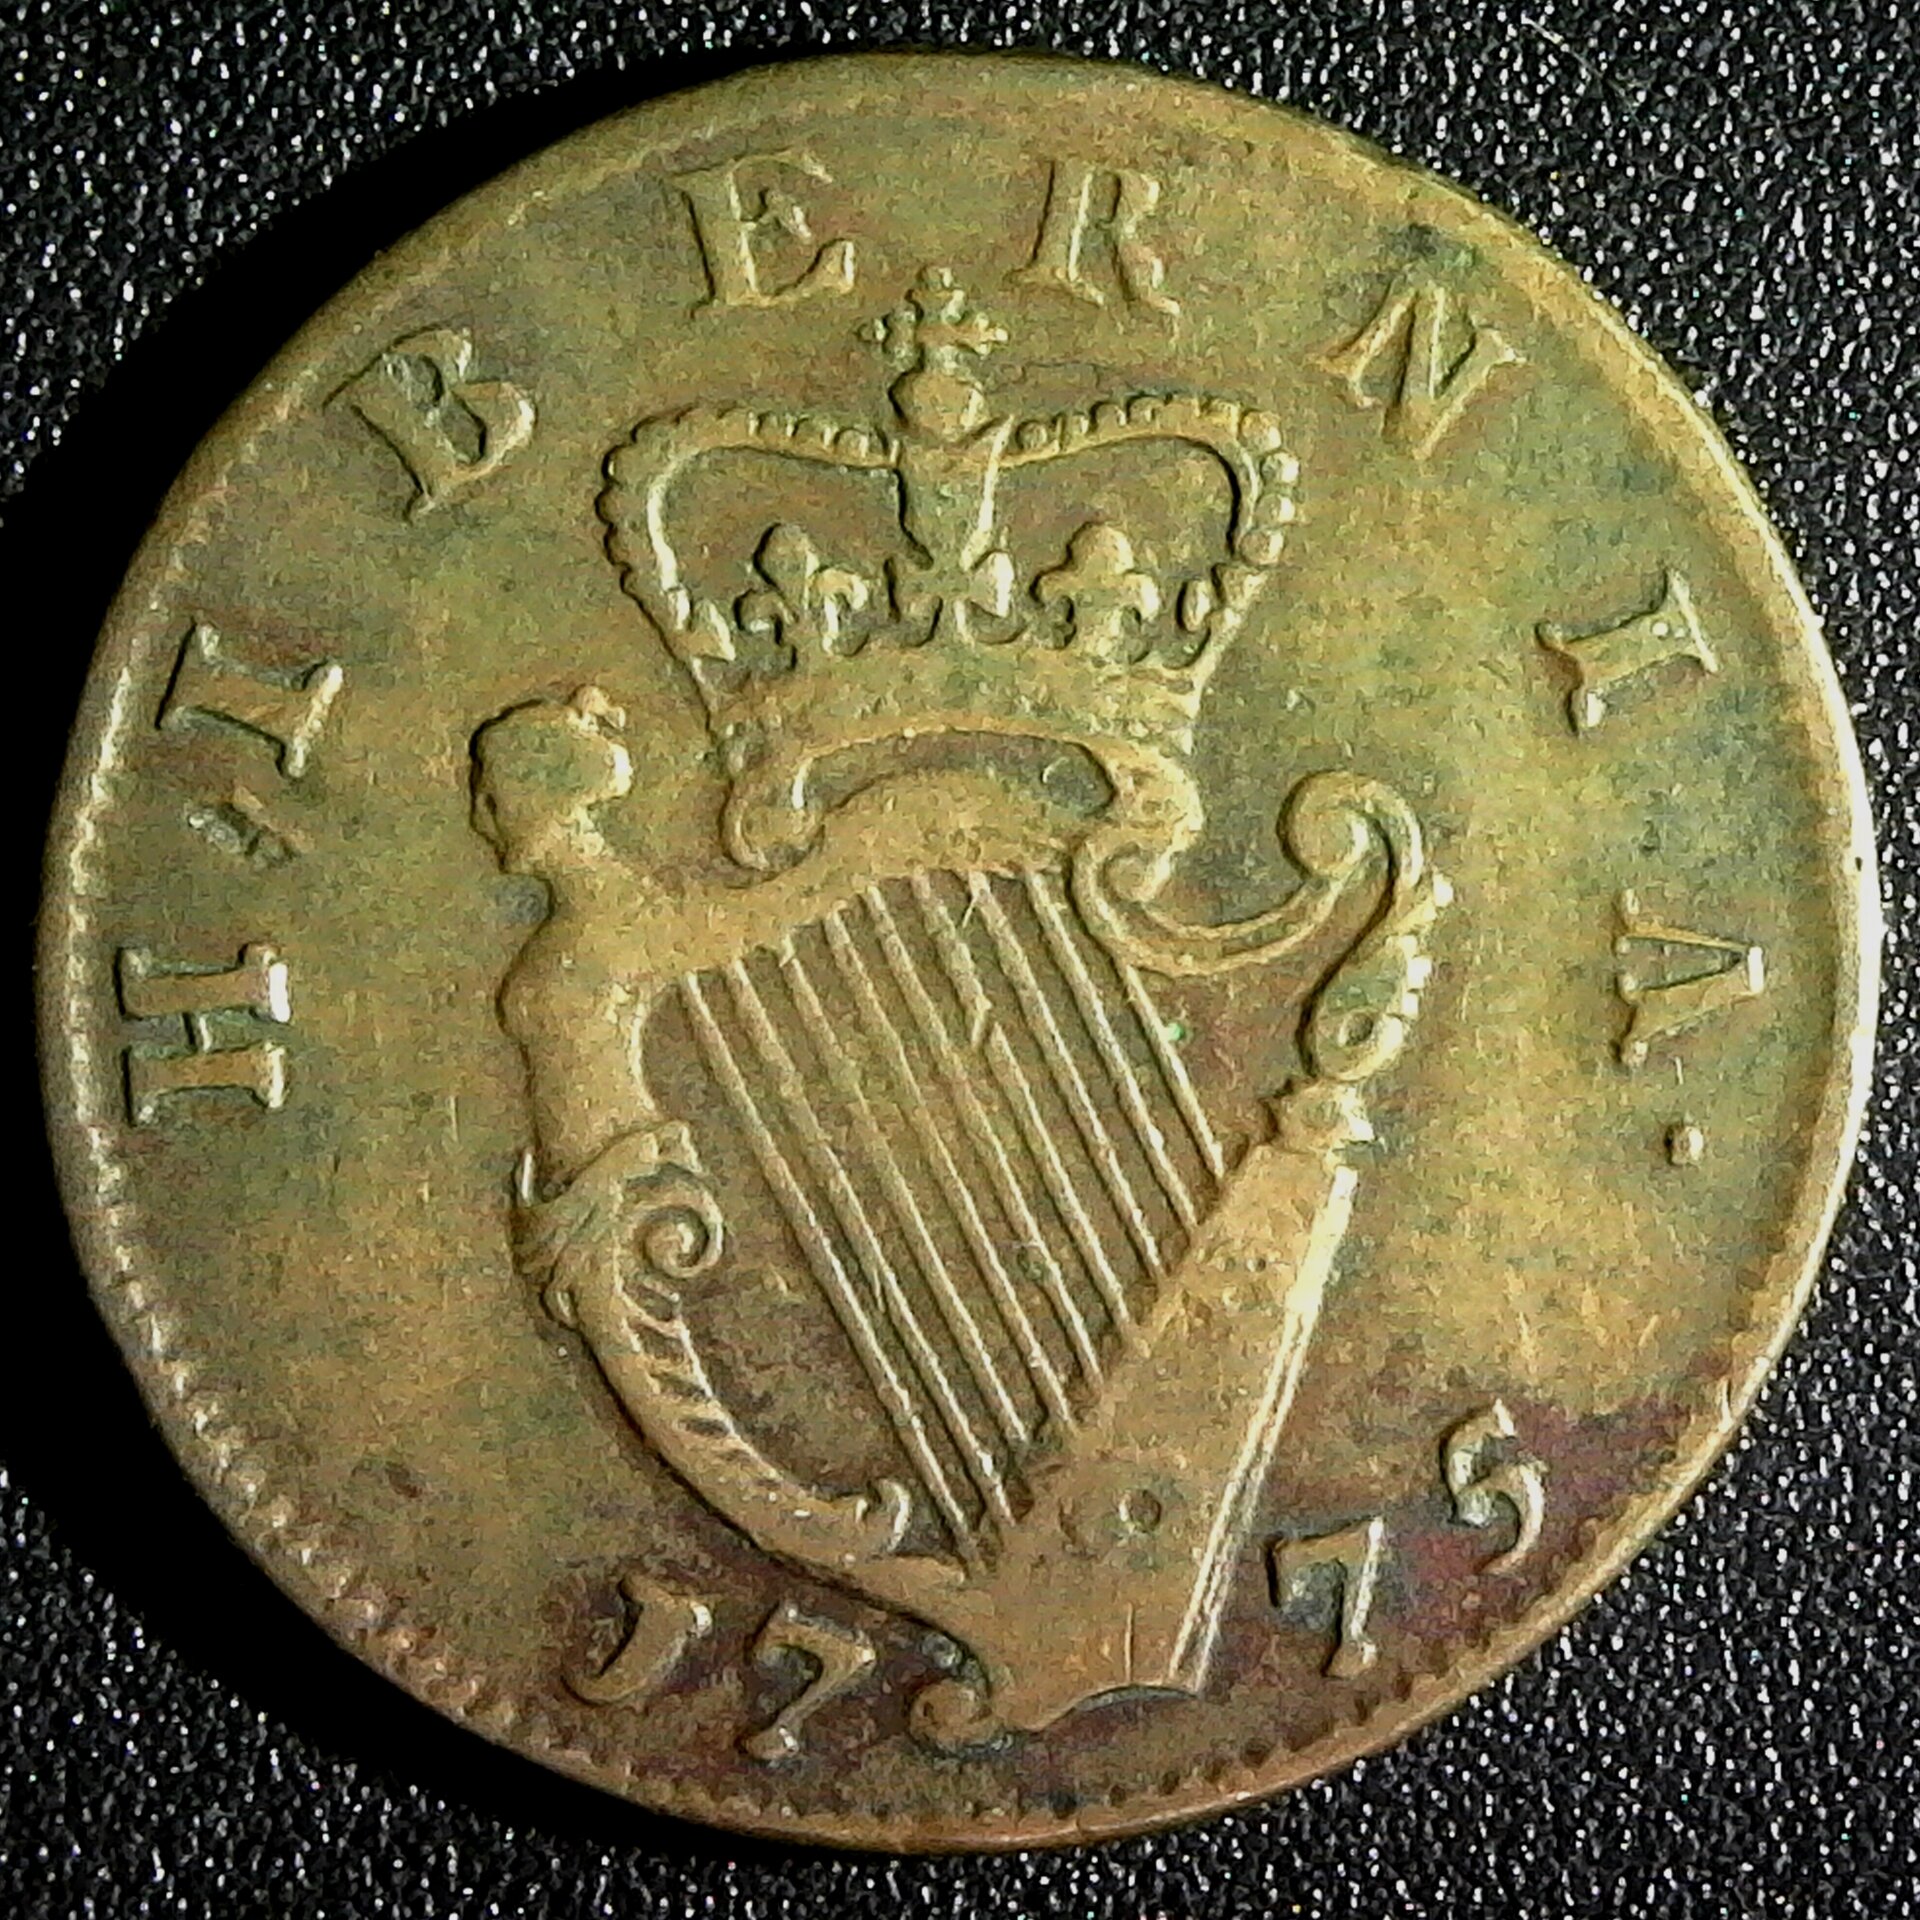 Ireland Half Penny 1775 rev B.jpg